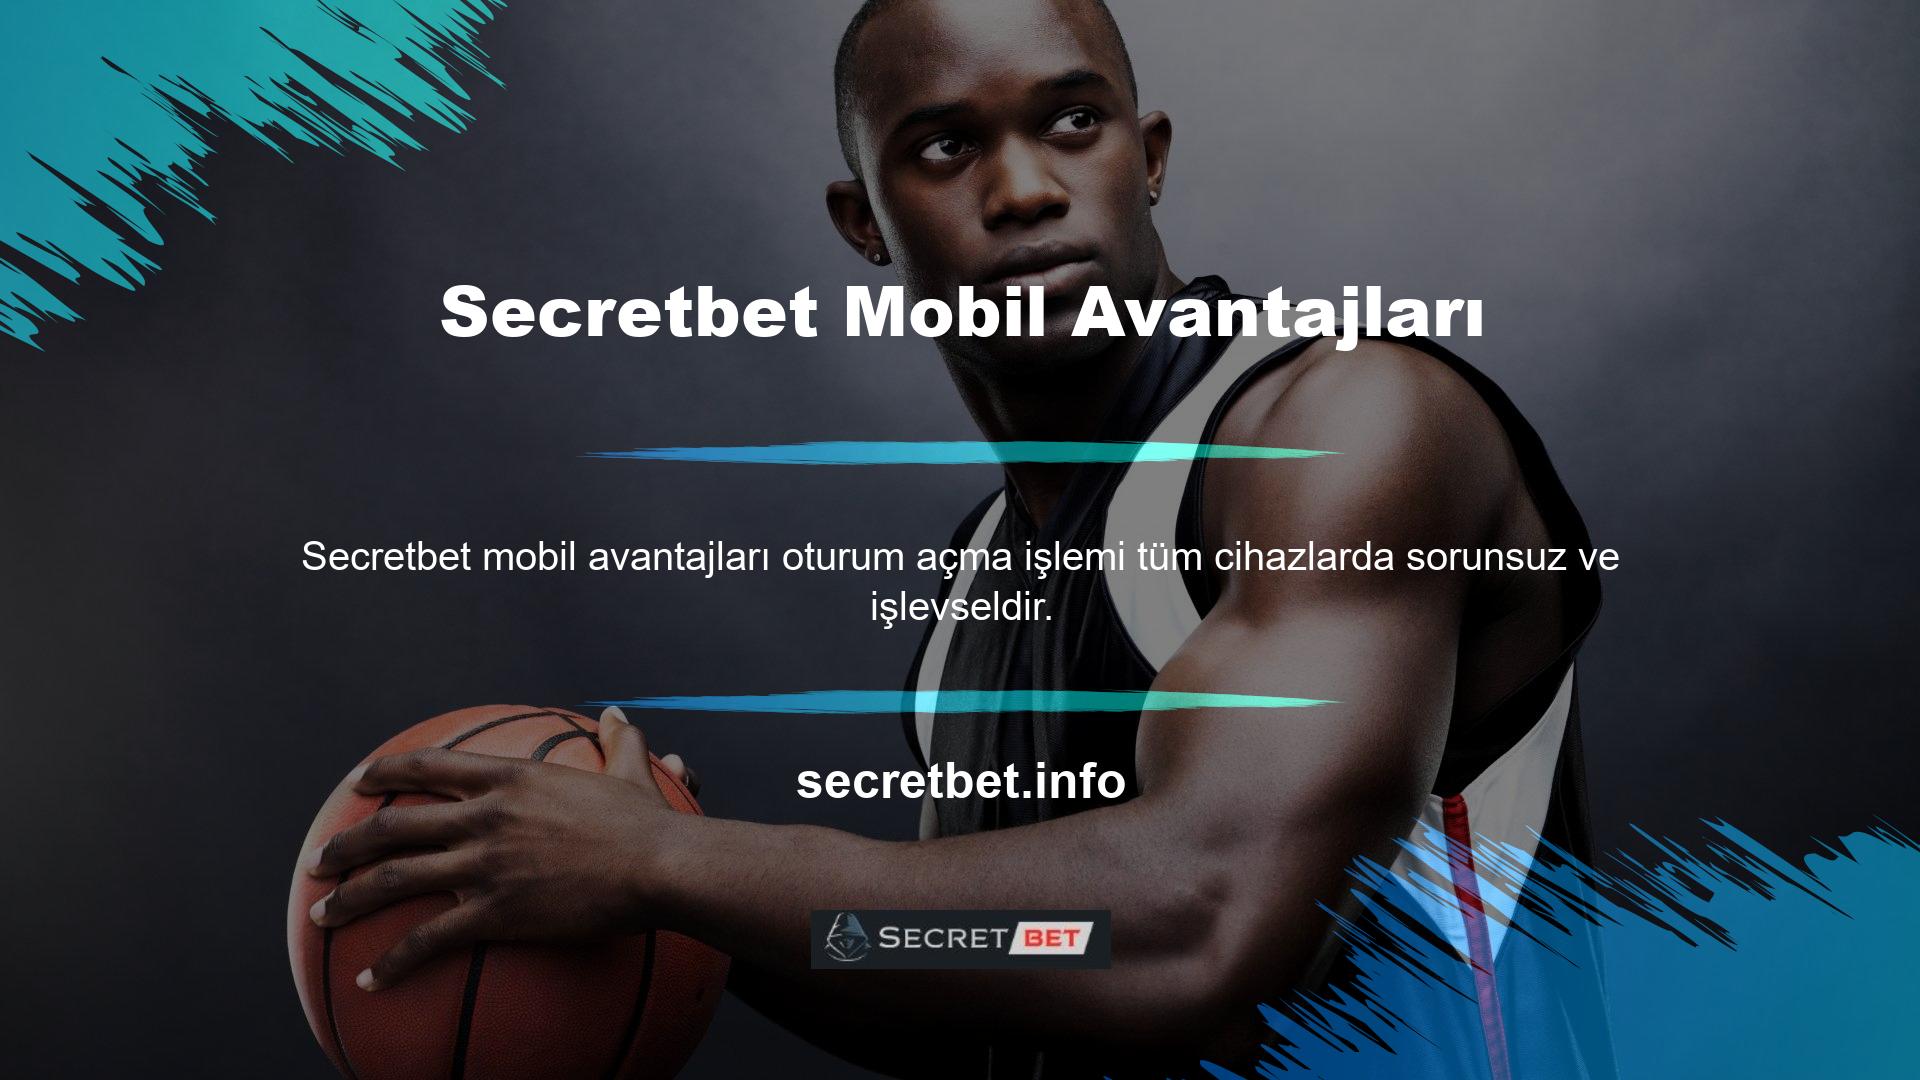 Bununla birlikte, Secretbet mobil girişinin birçok avantajı vardır